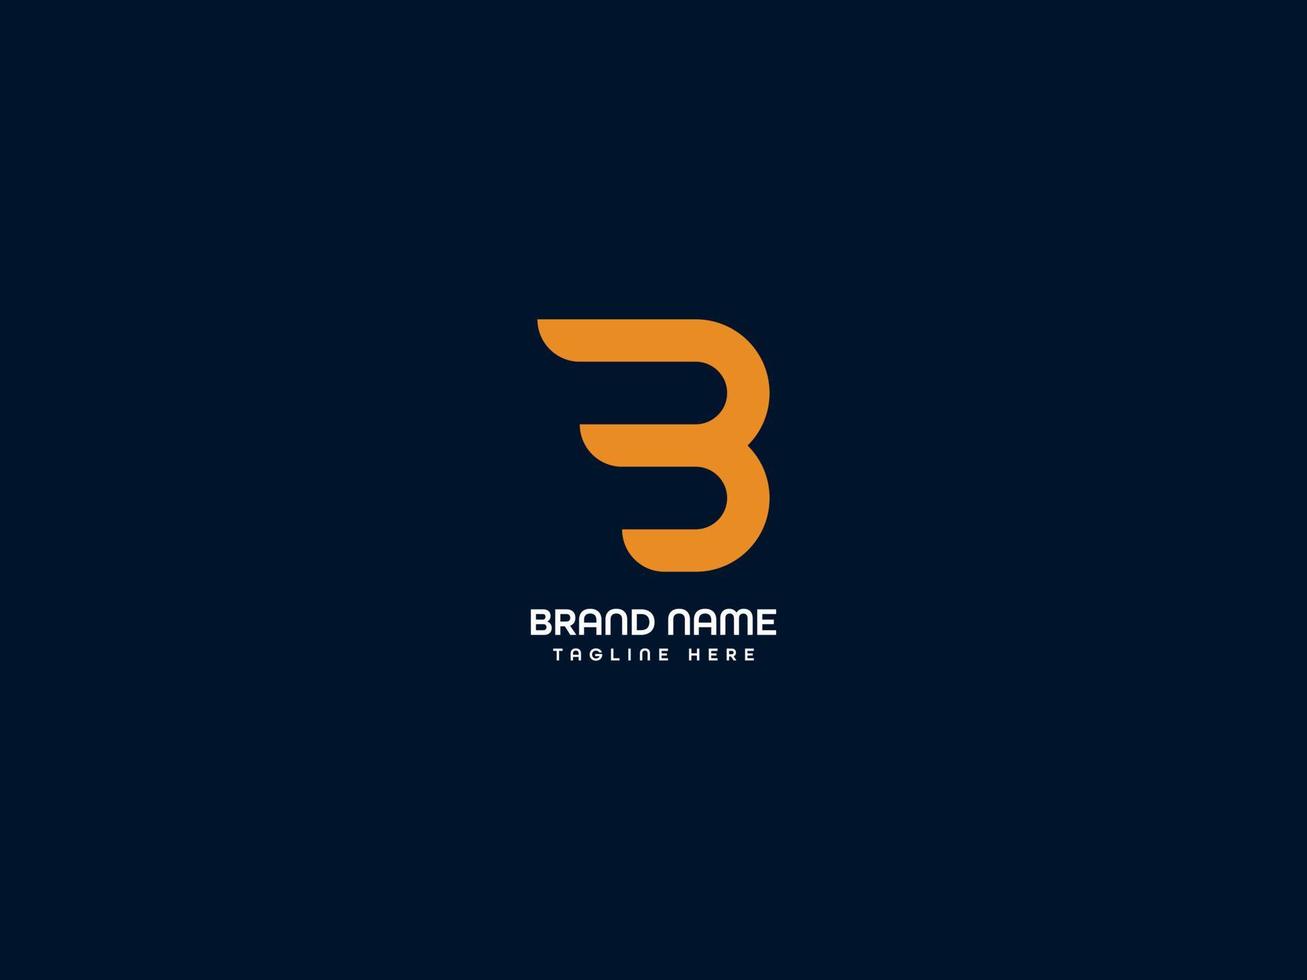 logotipo da letra b vetor